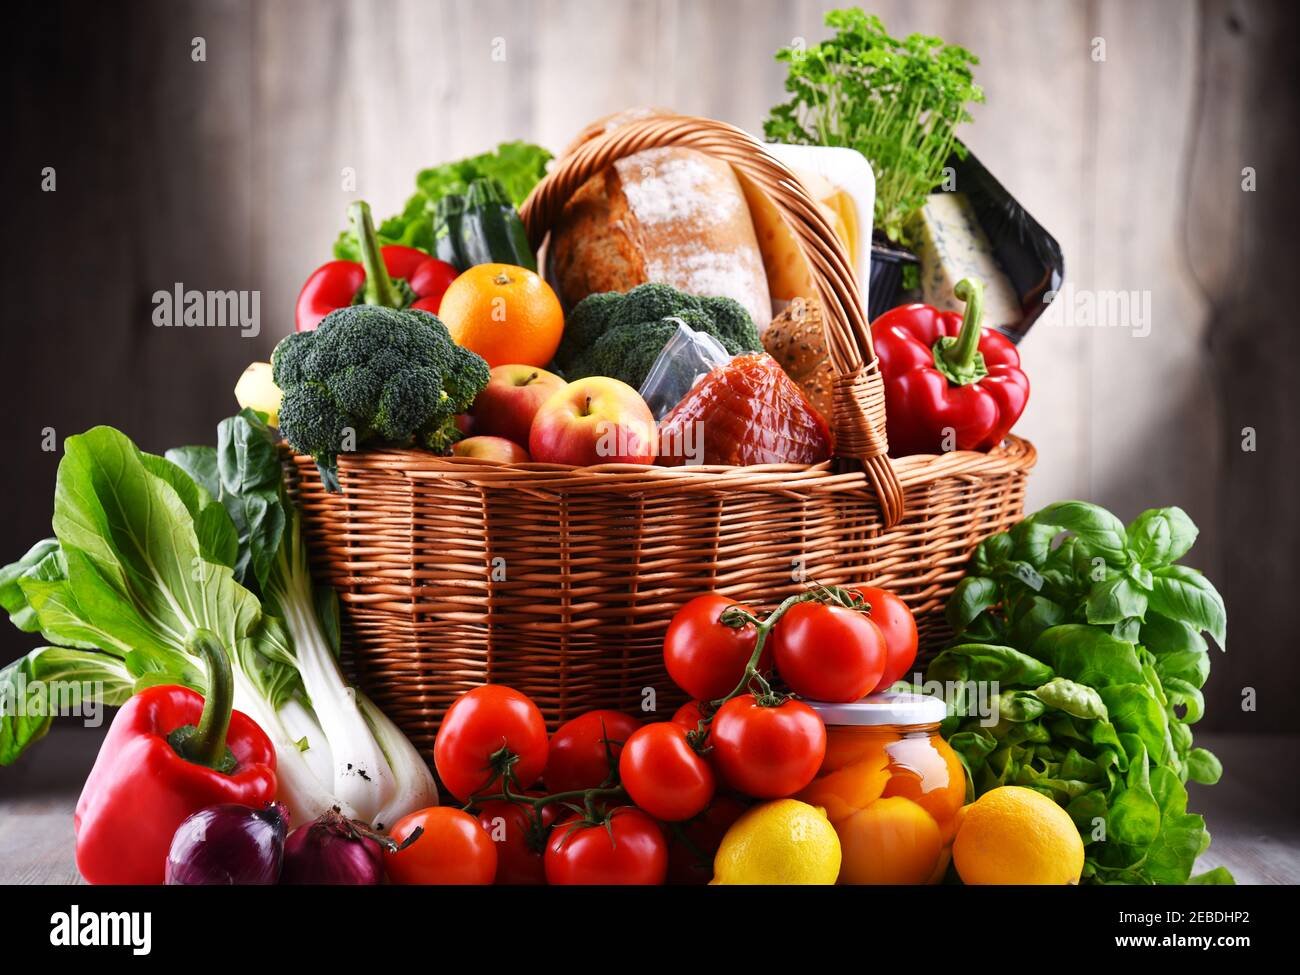 canasta de frutas y verduras frescas variadas